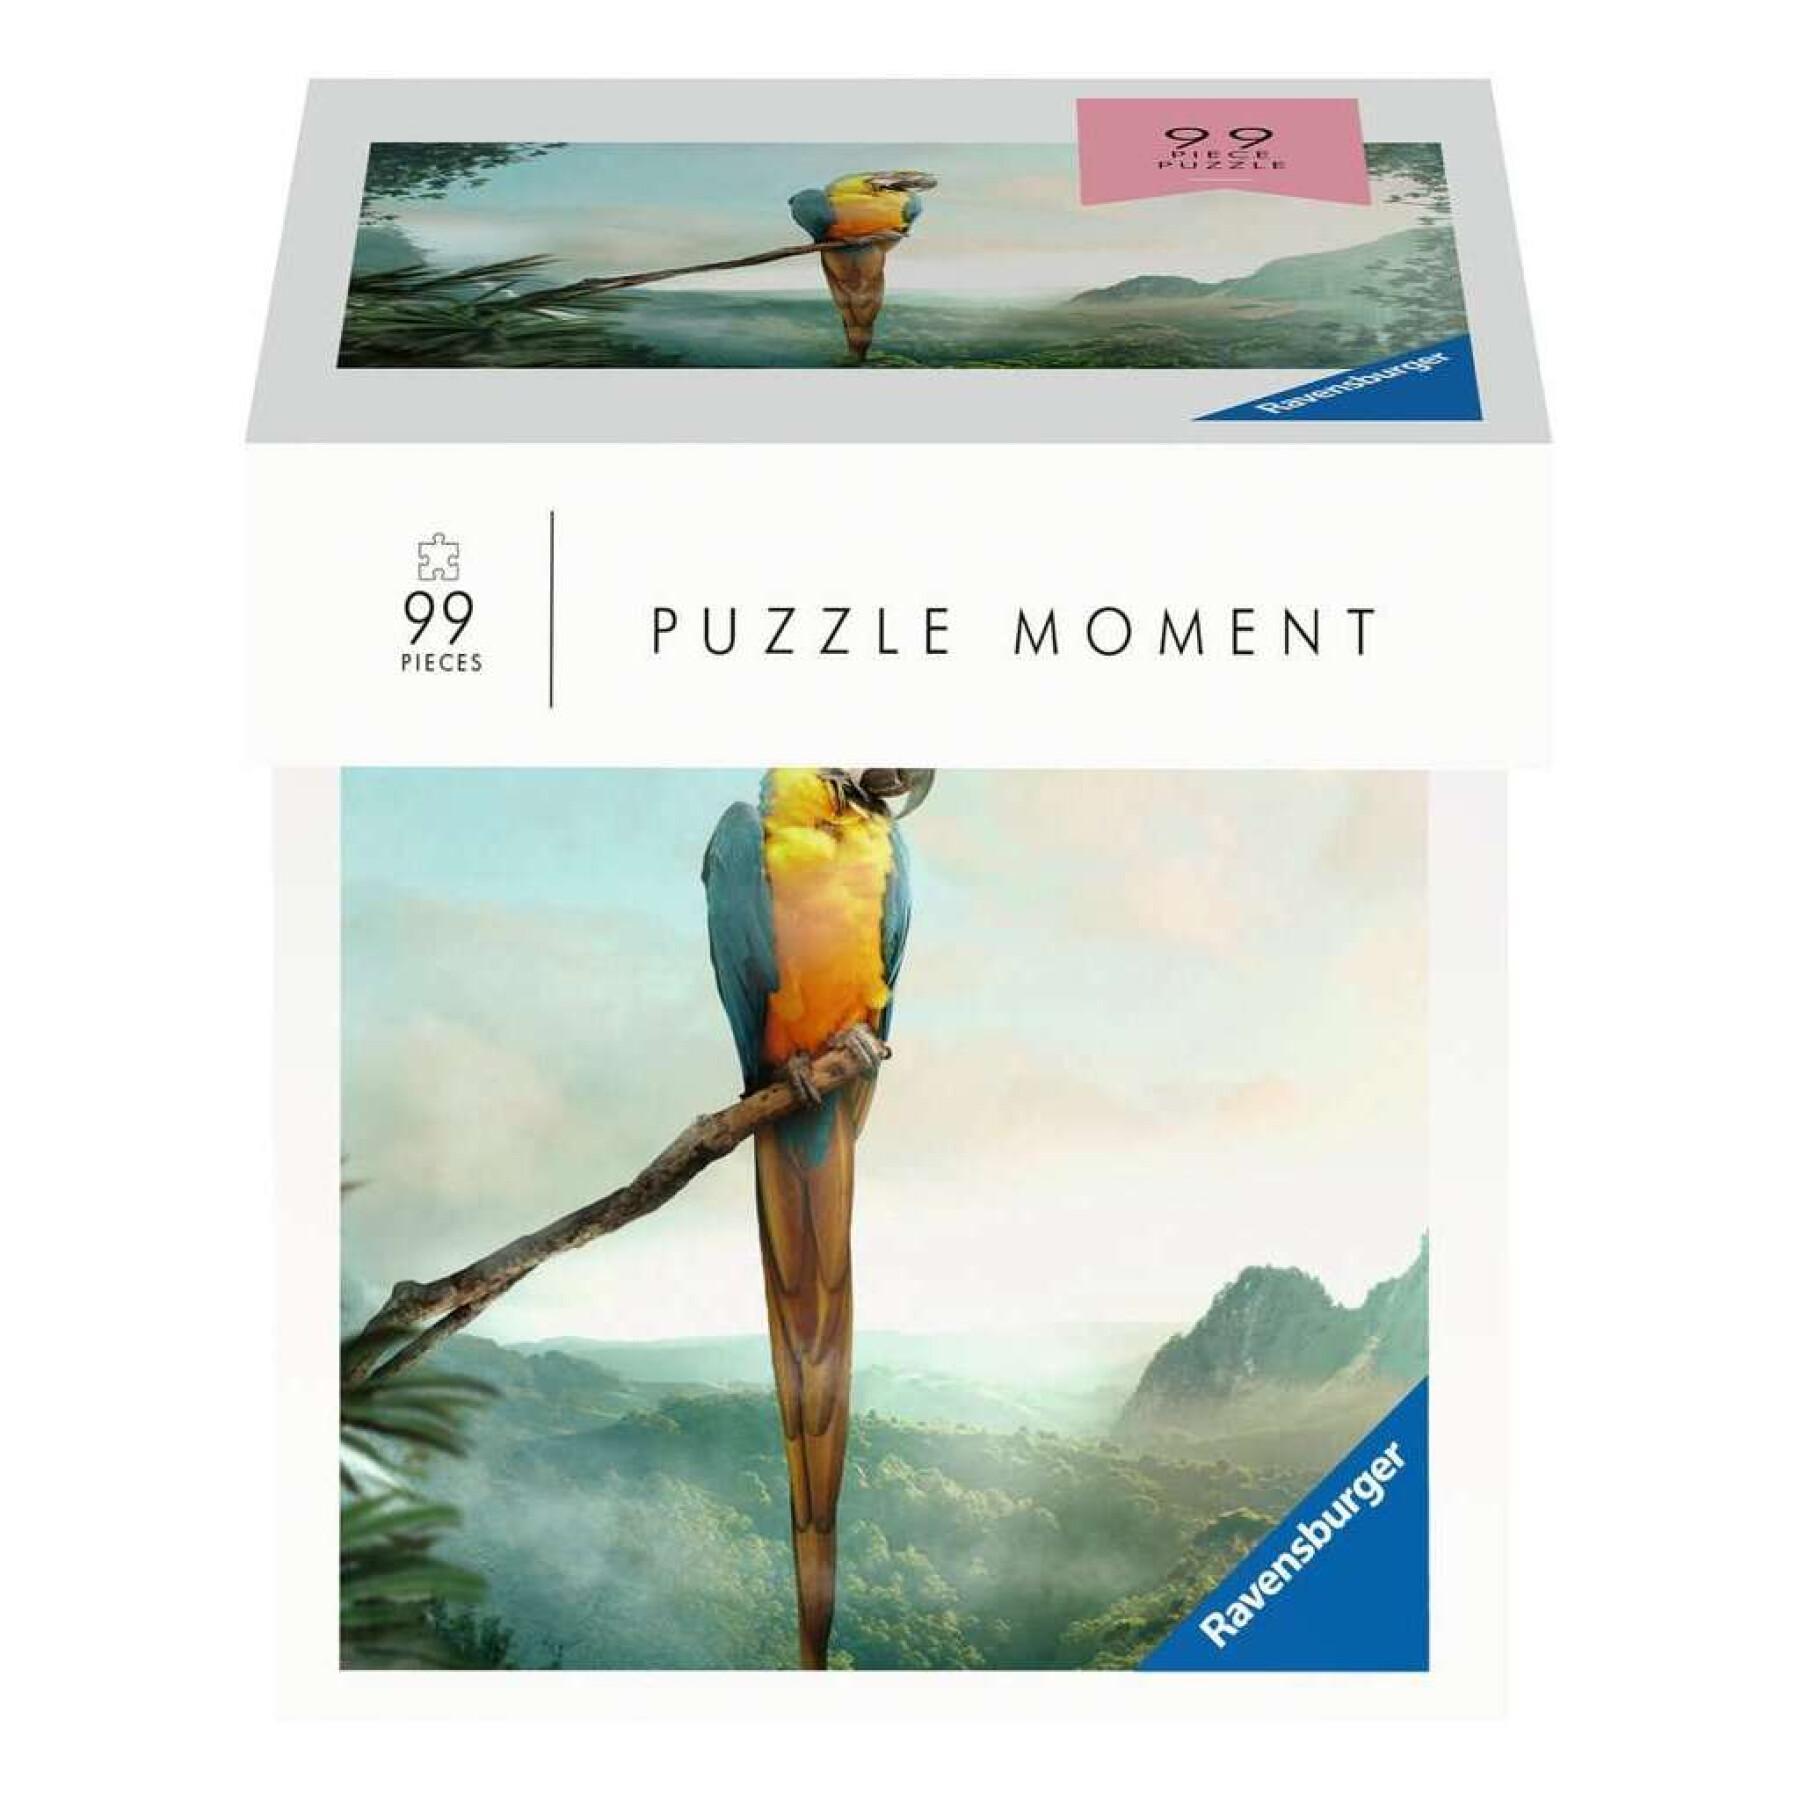 99 pieces puzzle parrot moment Ravensburger